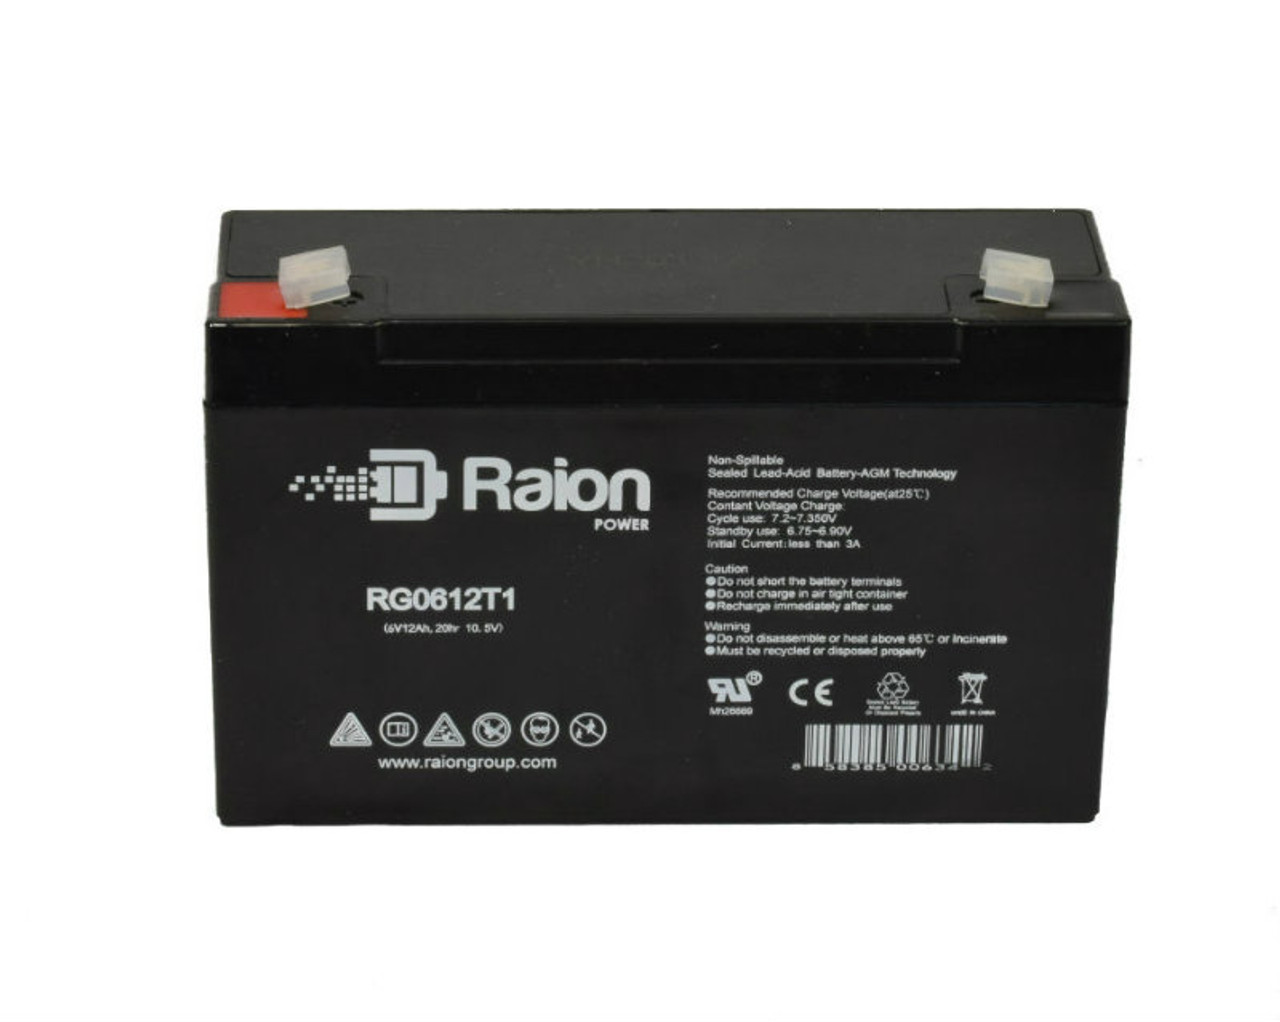 Raion Power RG06120T1 SLA Battery for Light Alarms RPG2